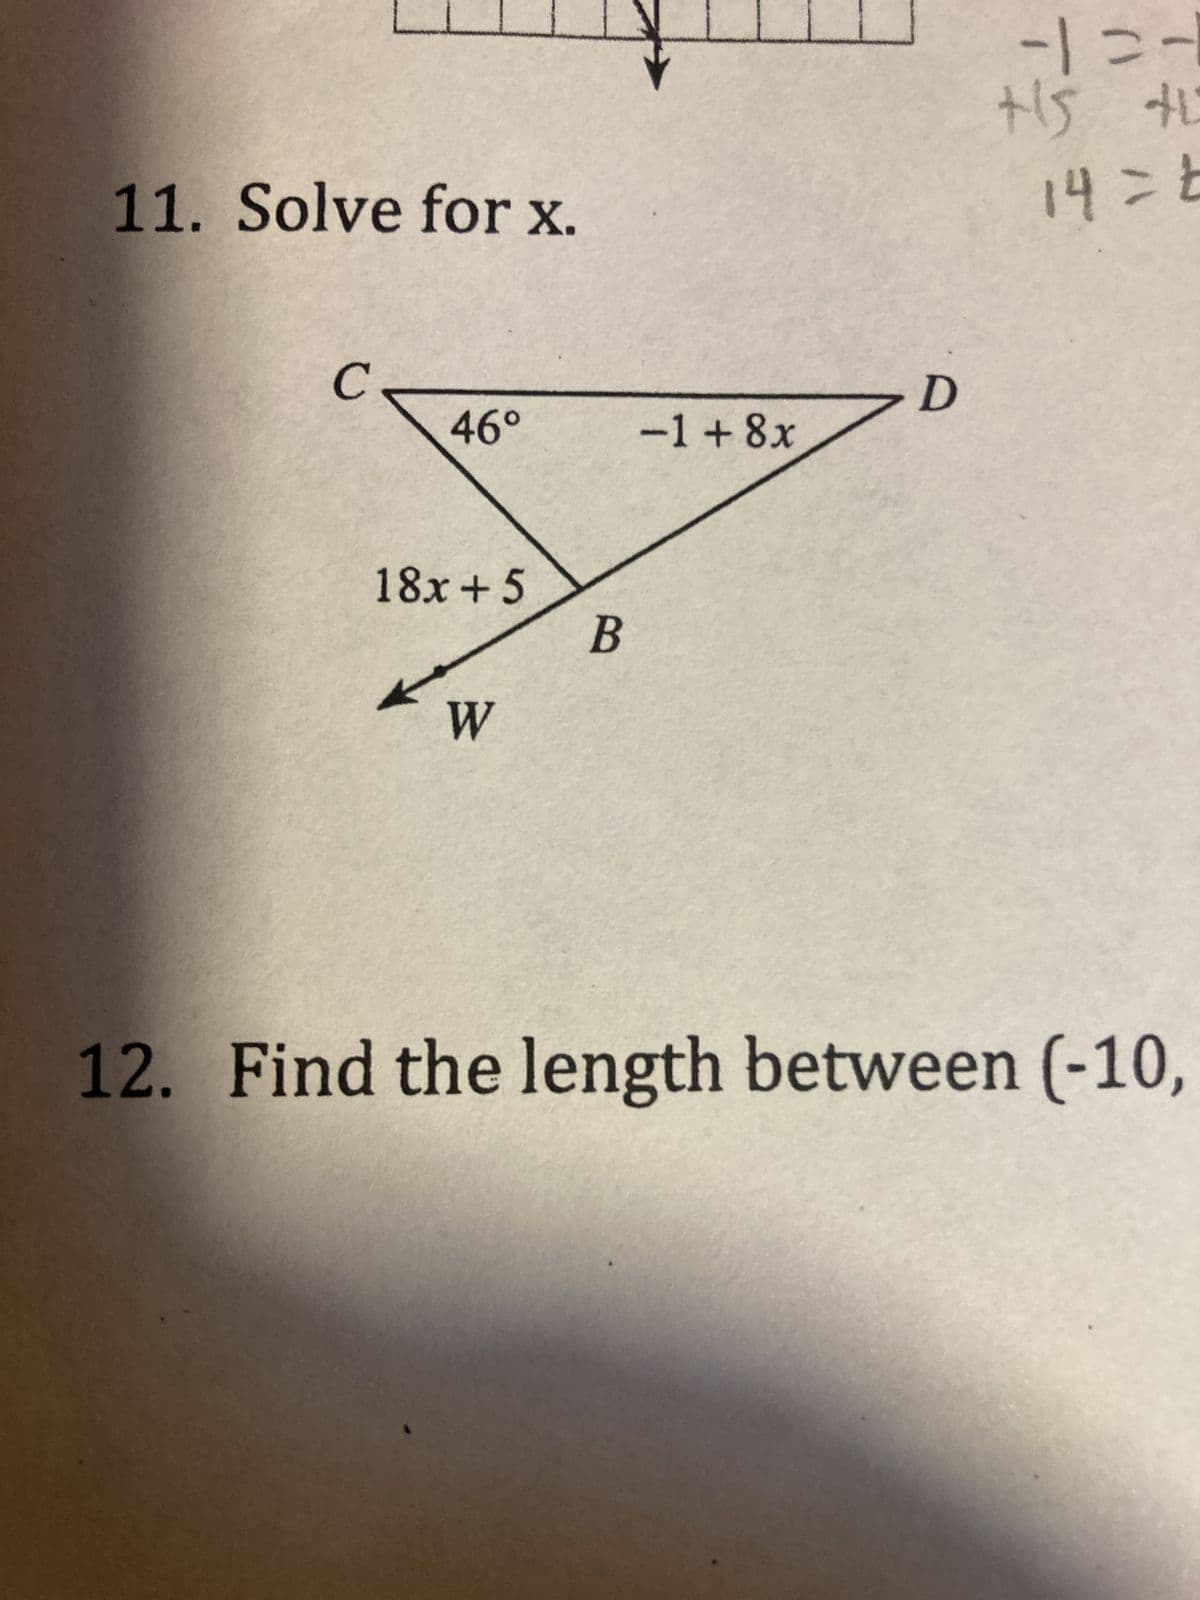 11. Solve for x.
C
D
46°
-1+8x
18x+5
B
W
-1=-
+15 +1
14= t
12. Find the length between (-10,